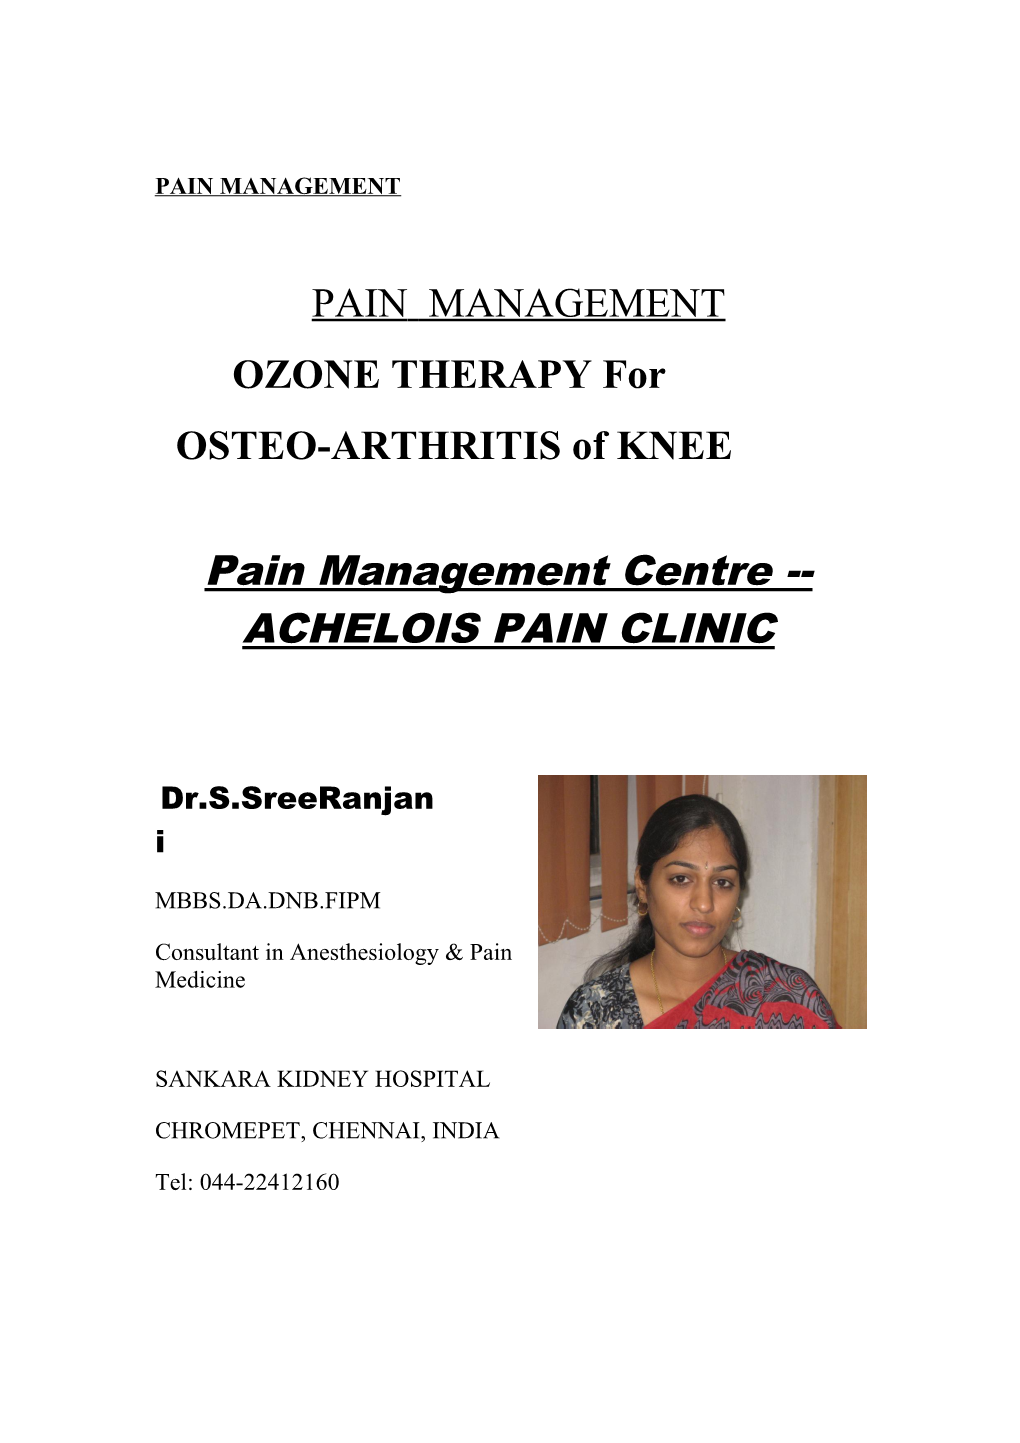 Pain Management Centre ACHELOIS PAIN CLINIC